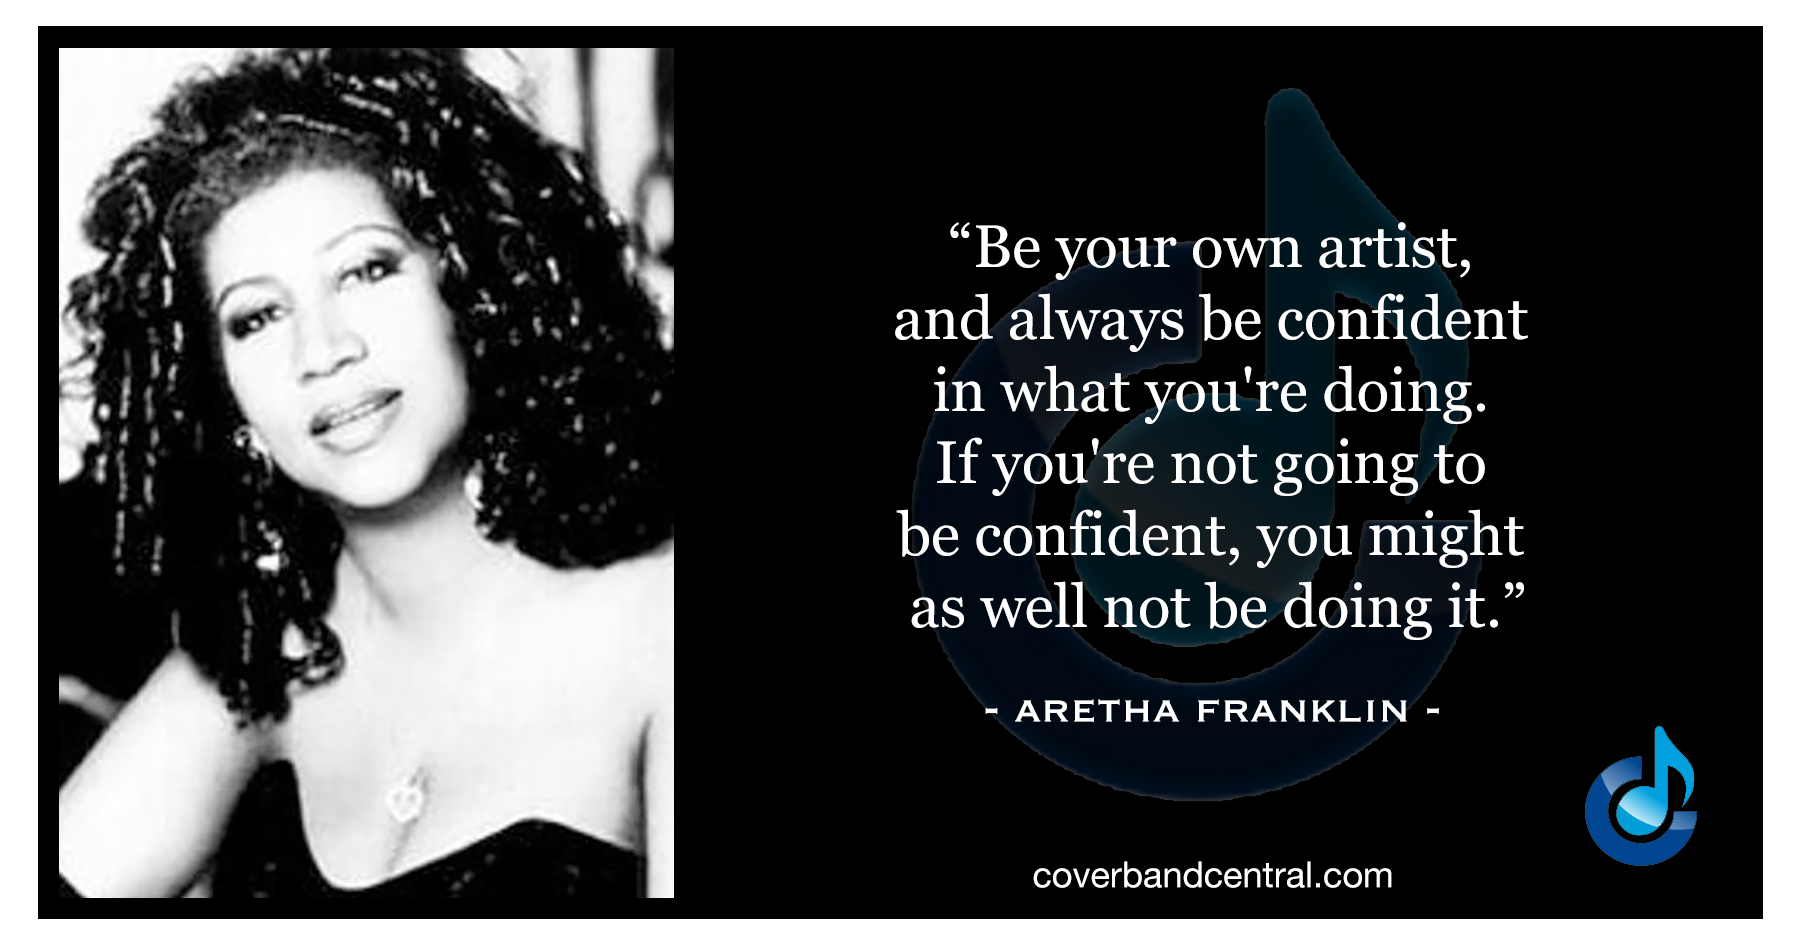 Aretha Franklin quote